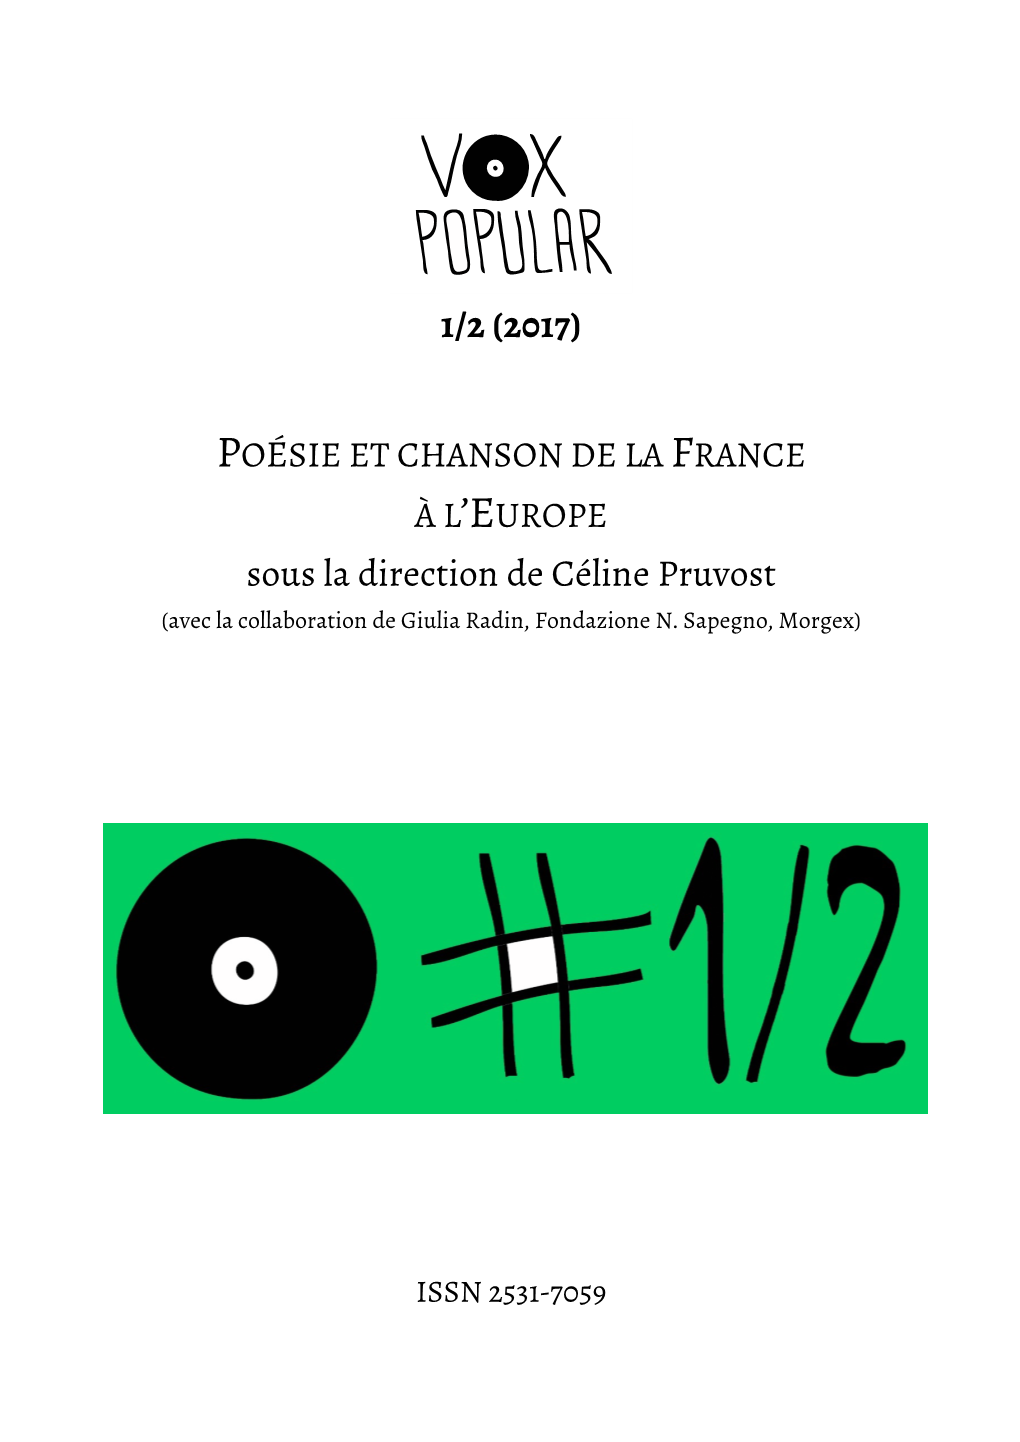 1/2 (2017) Sous La Direction De Céline Pruvost